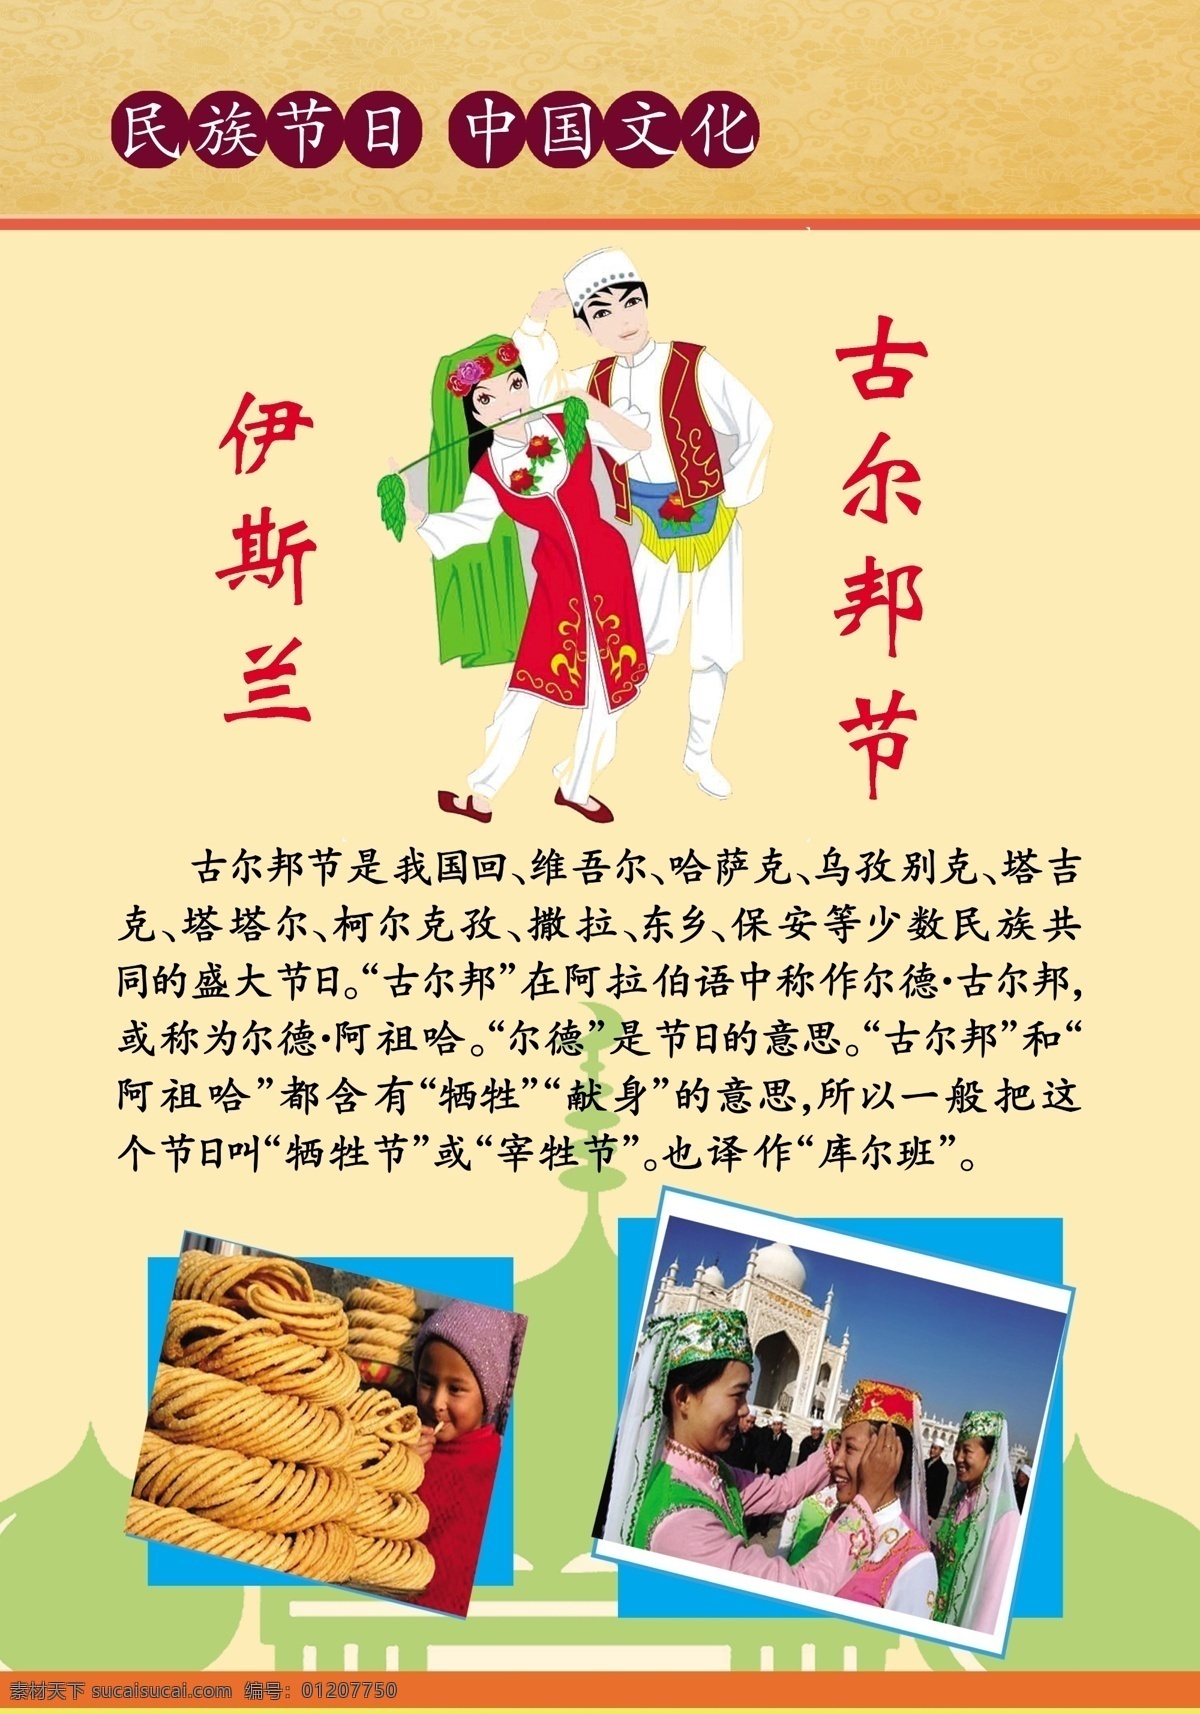 民族 节日 中国 文化 伊斯兰 古尔邦节 馓子 回族服饰 原创设计 其他原创设计